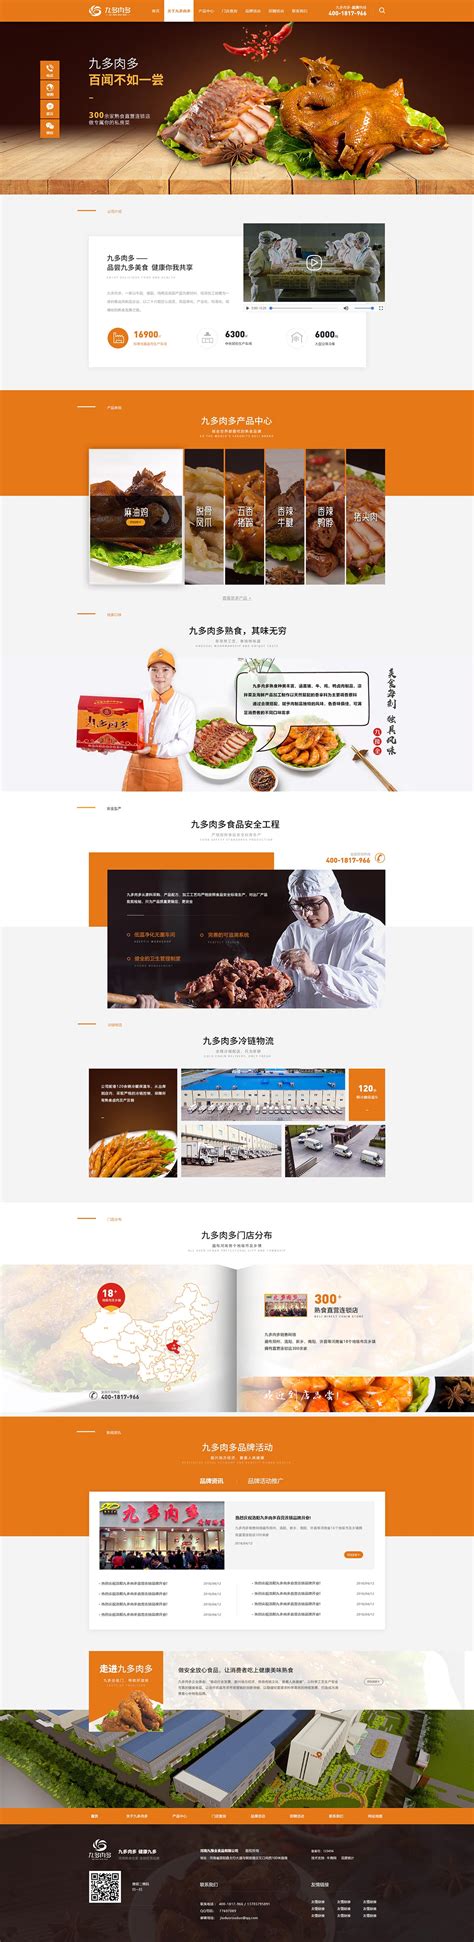 九多肉多熟食-牛商网营销型网站案例展示